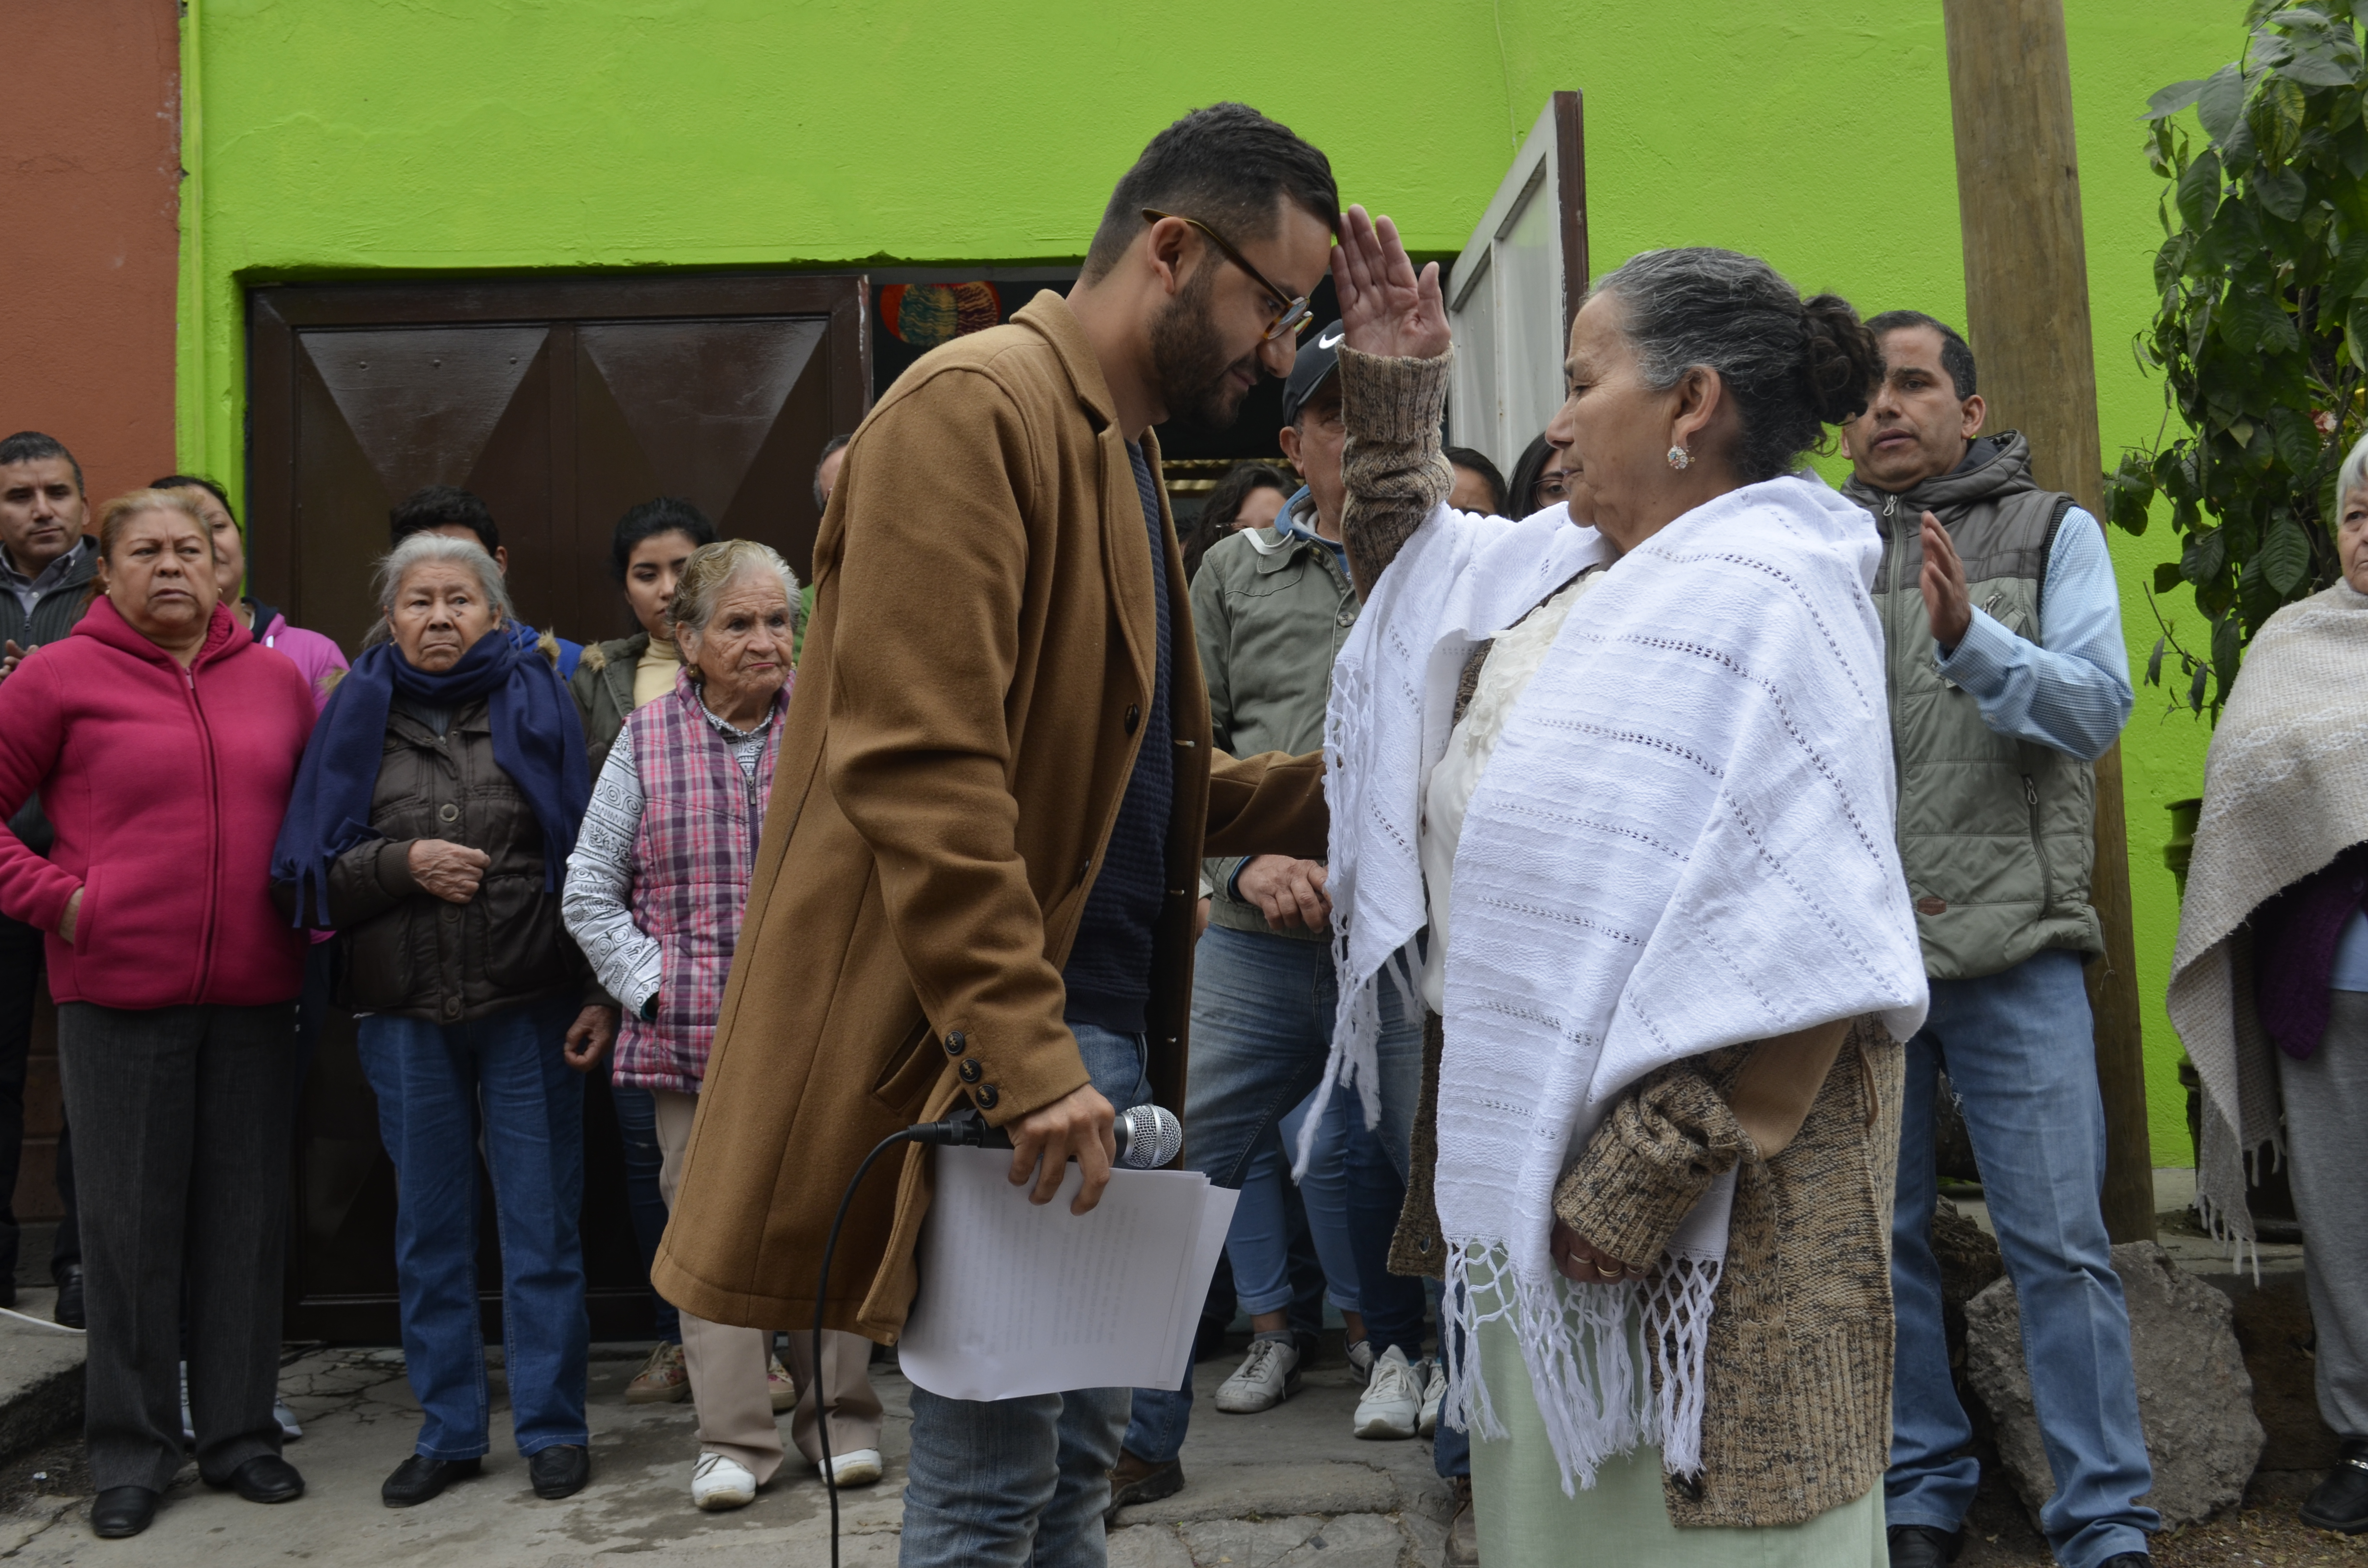  Con la bendición de su madre, Jesús Monsiváis arranca colecta de firmas en apoyo a su candidatura independiente